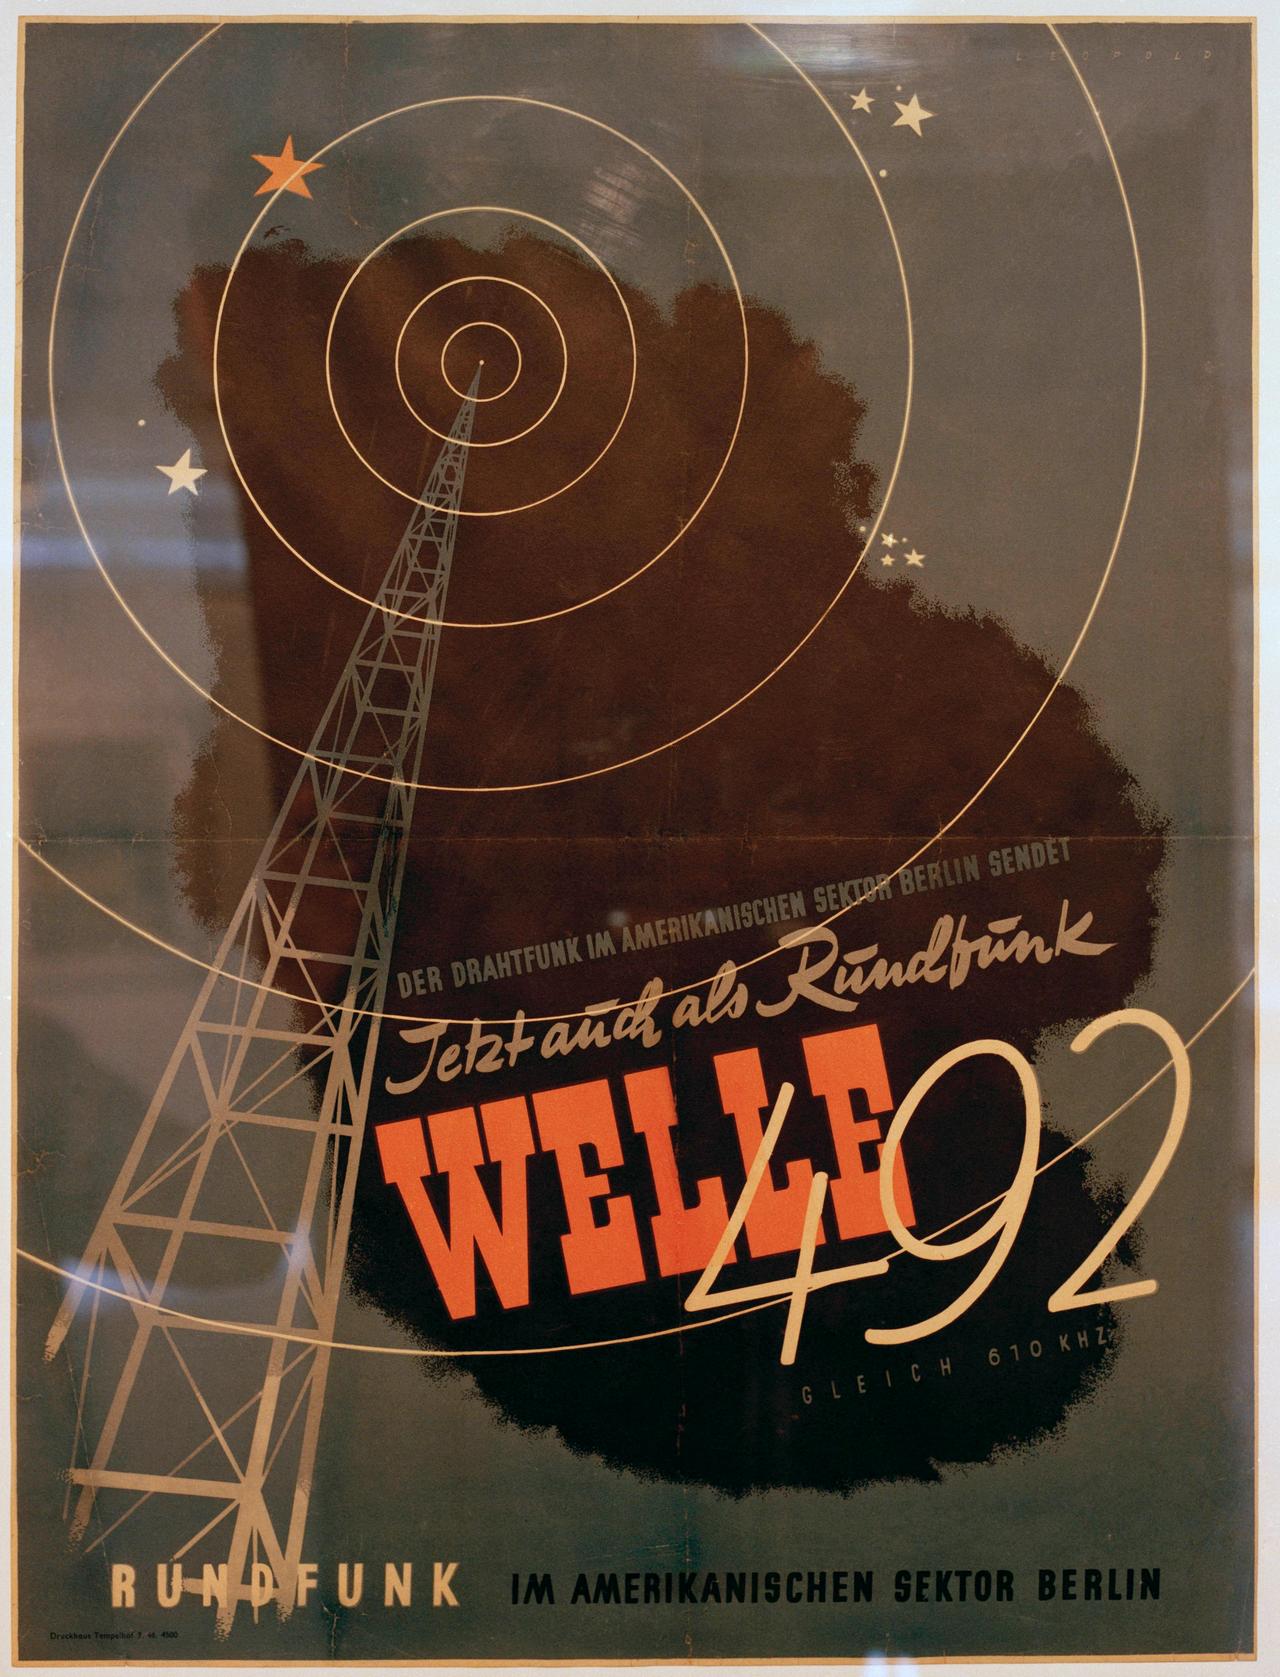 Plakat von 1946: RIAS Rundfunksender, 1945 von der US-amerikanischen Militärverwaltung gegründet, mit der Aufschrift: "Der Drahtfunk im amerikanischen Sektor Berlin sendet / Jetzt auch als Rundfunk Welle 492"